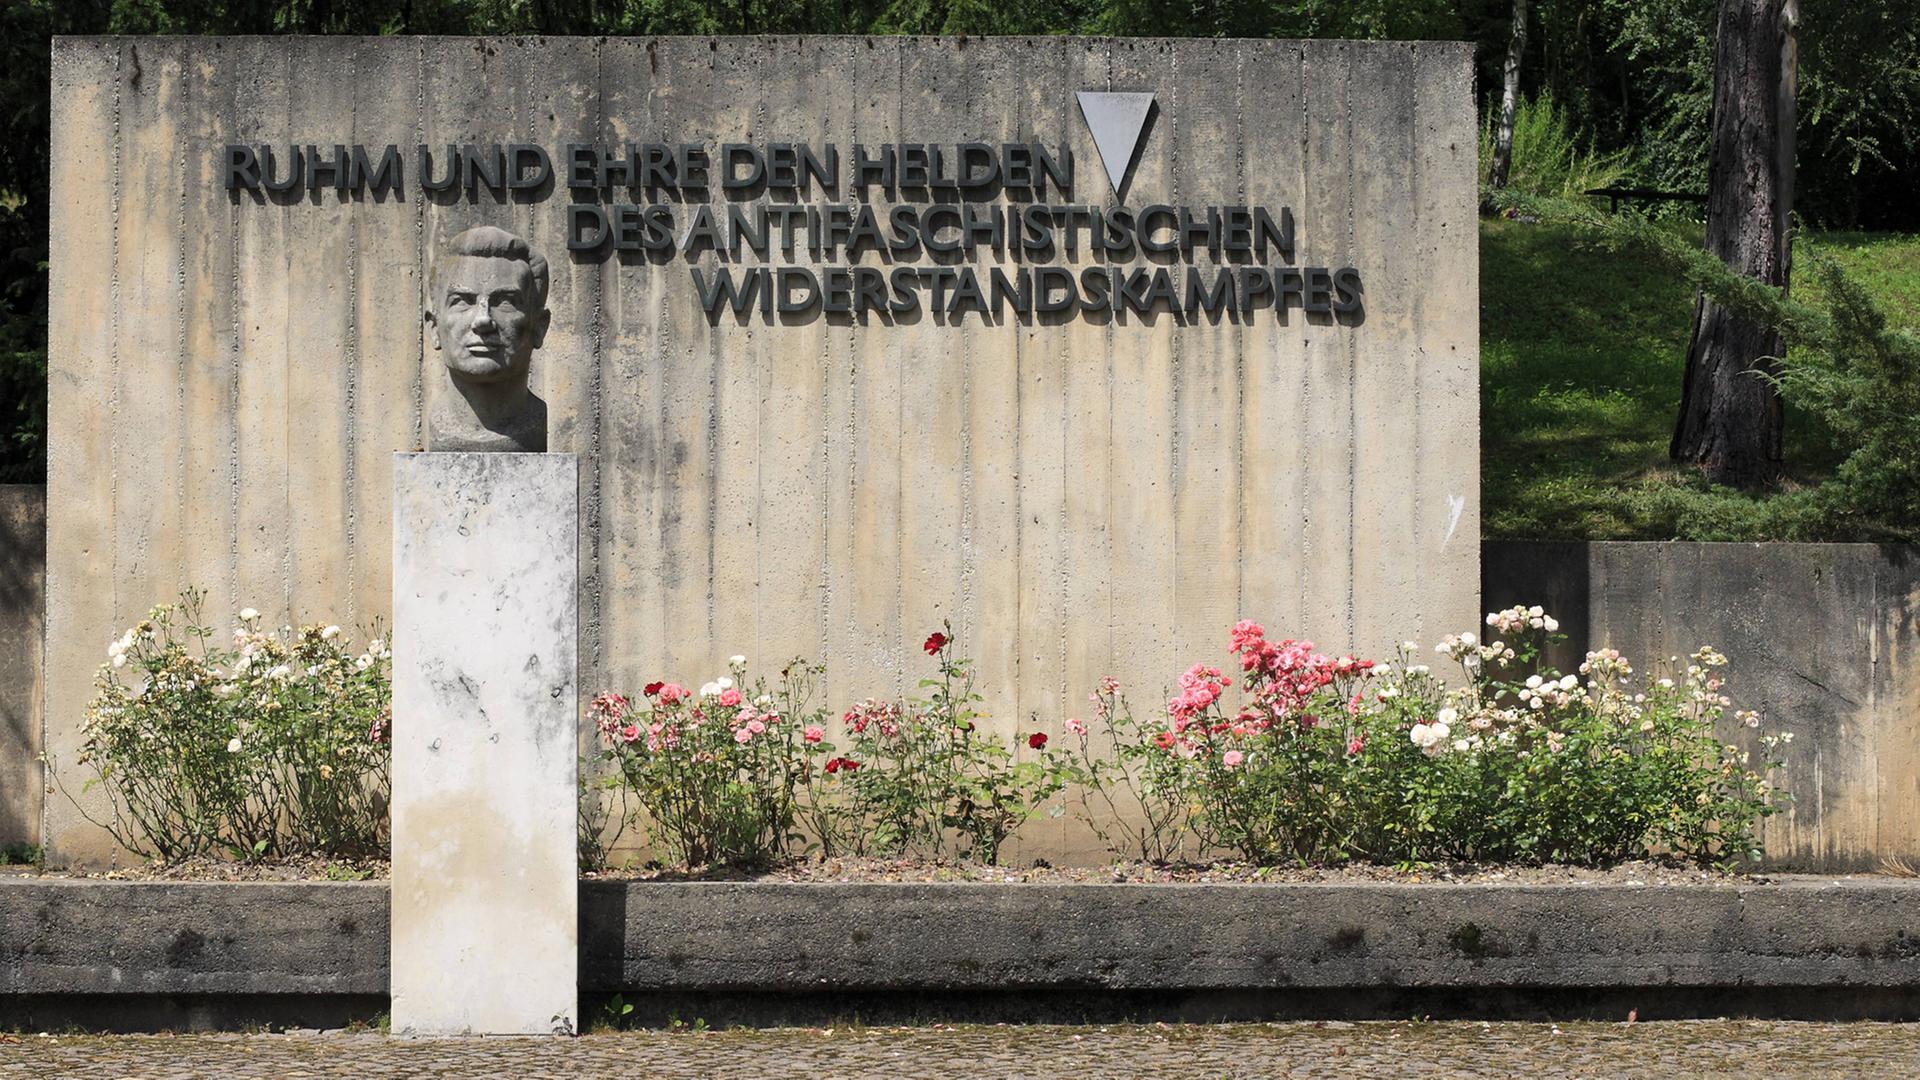 Gedenkstätte für die Opfer des antifaschistischen Widerstands auf dem Nordfriedhof Jena-